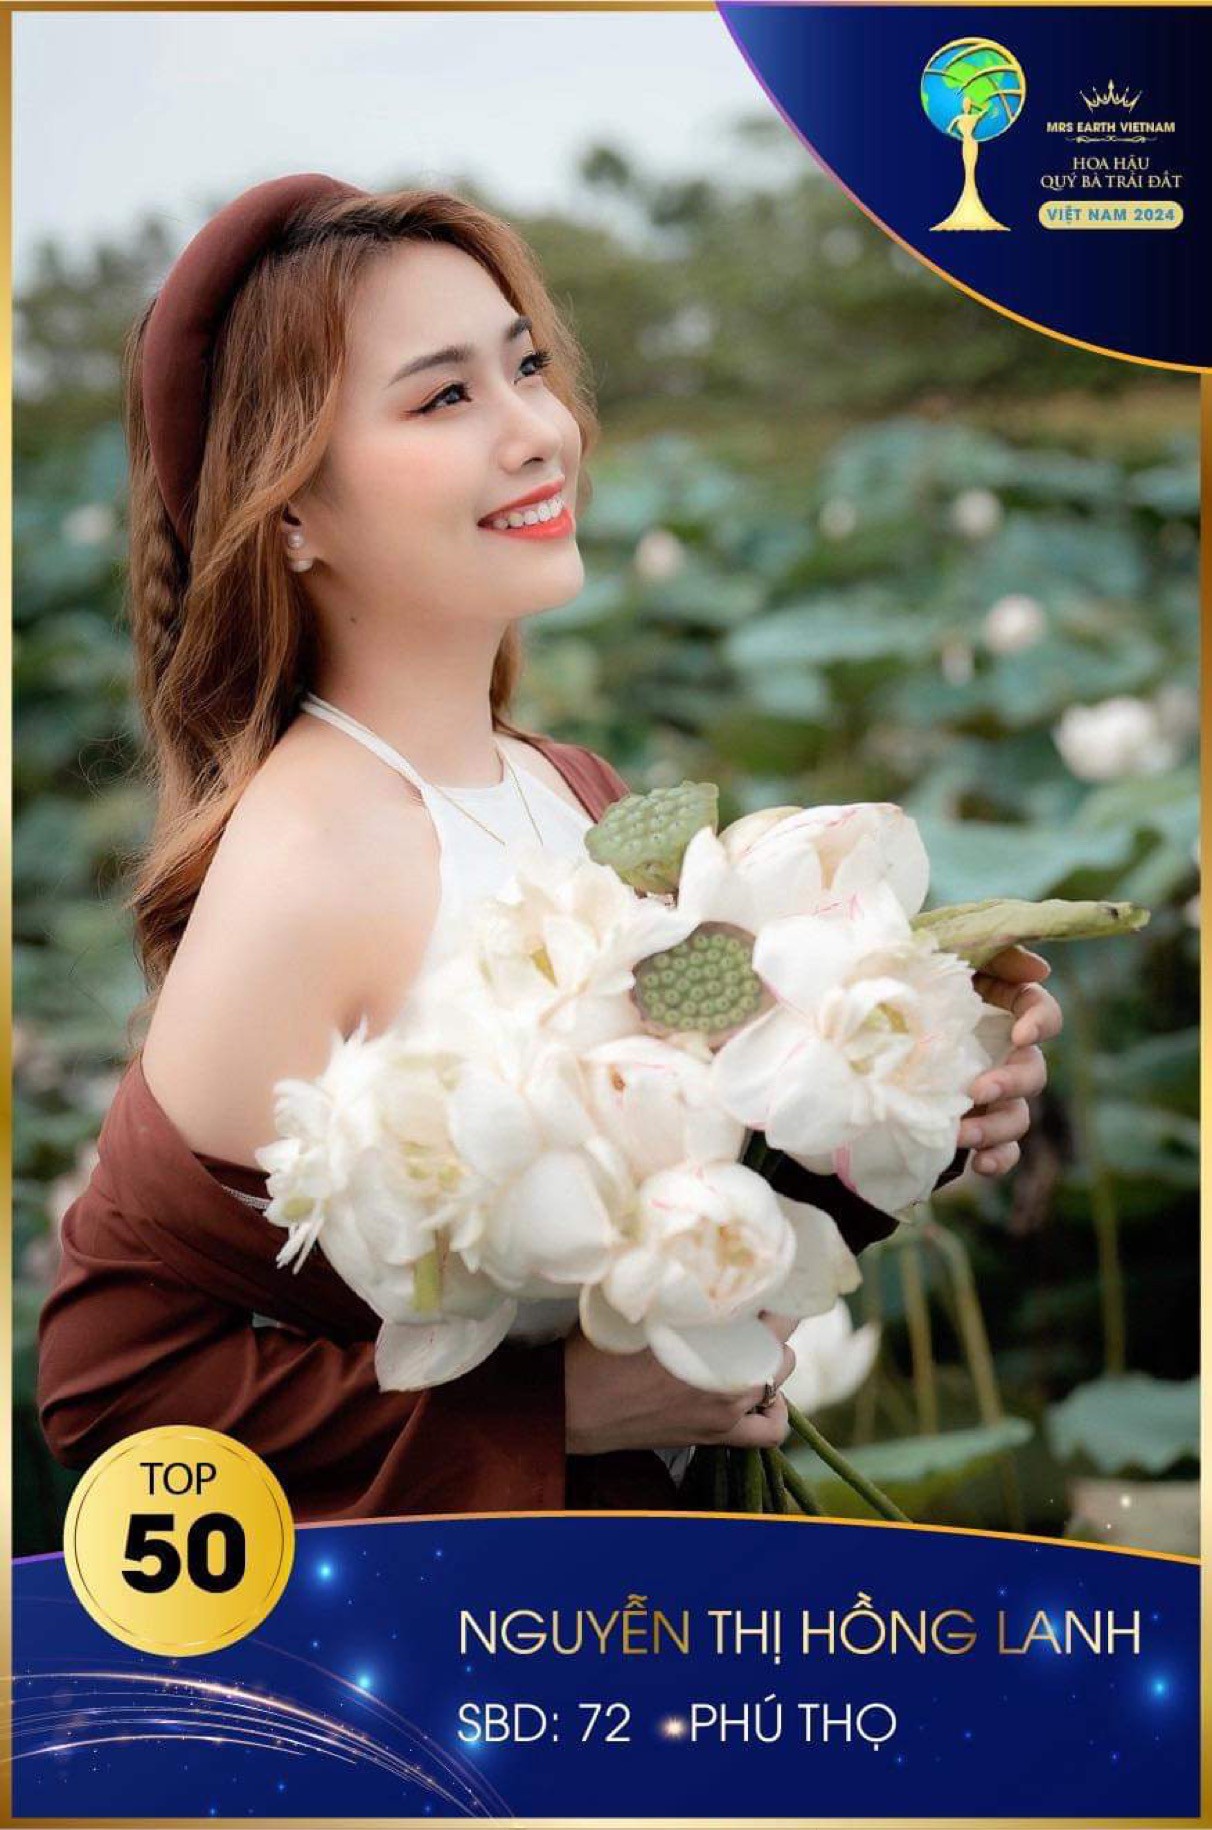 Hé lộ Top 5 của cuộc thi Mrs Earth Vietnam - 5